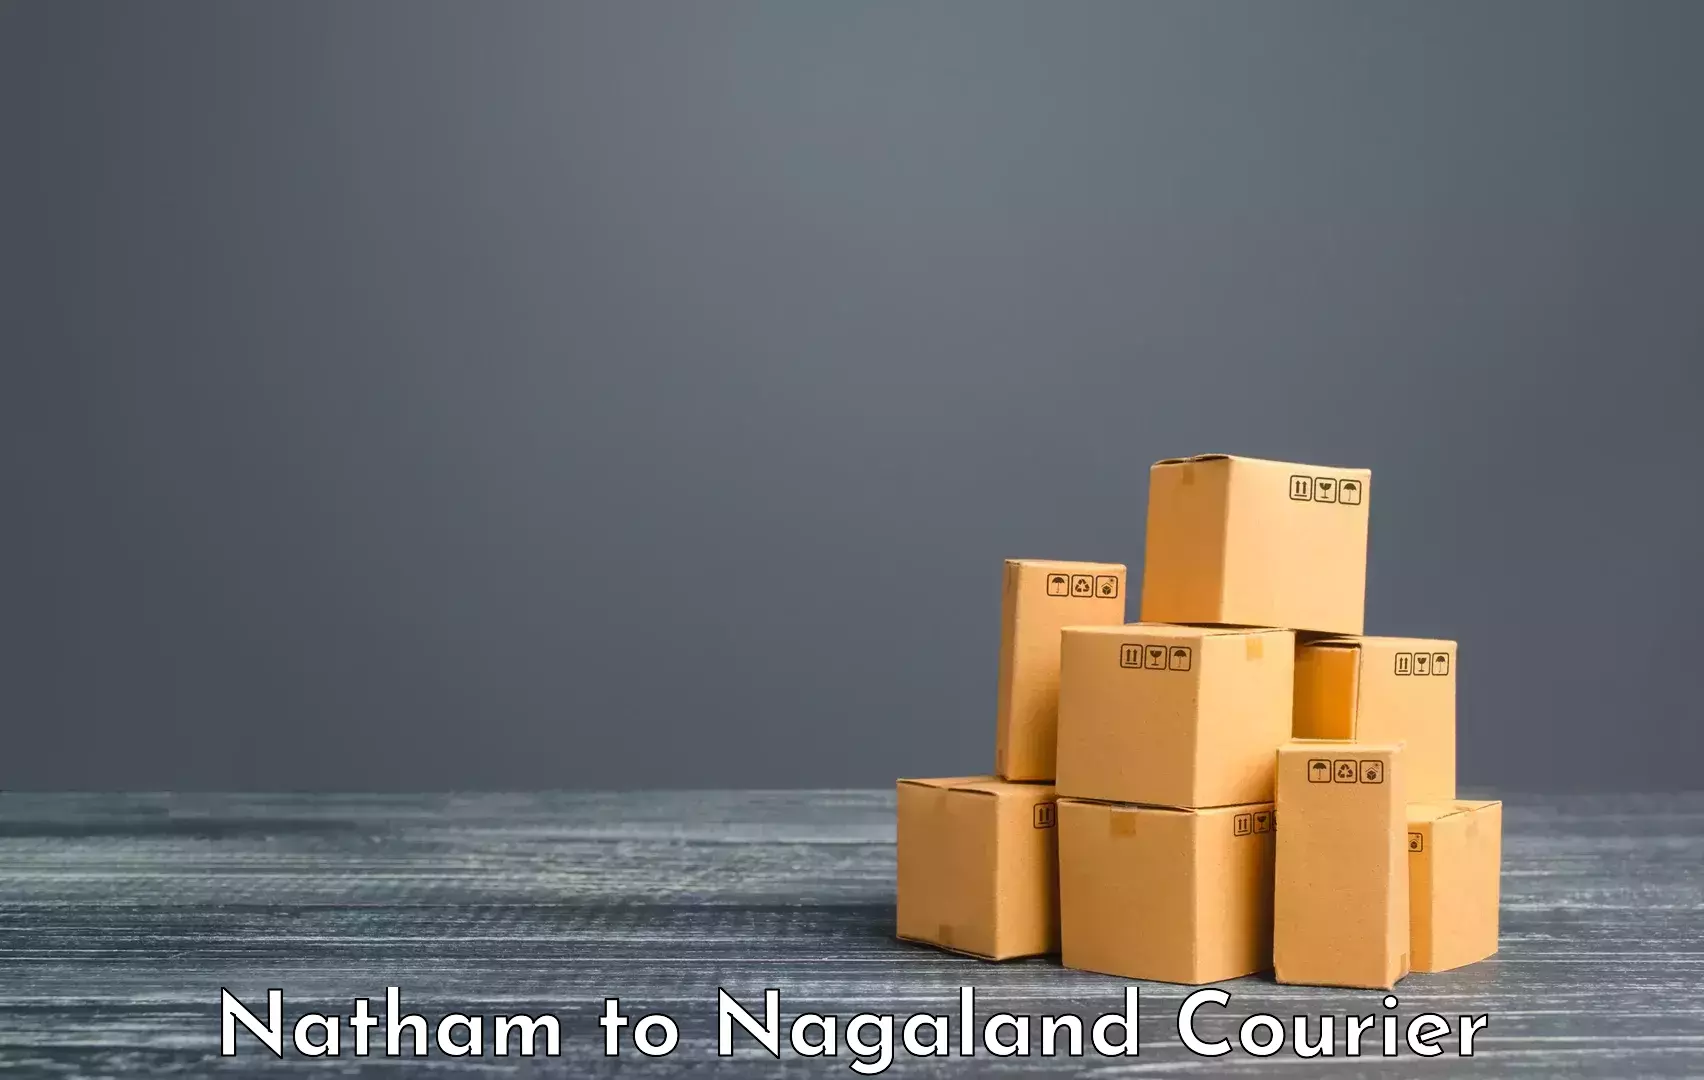 Luggage transport company Natham to Phek